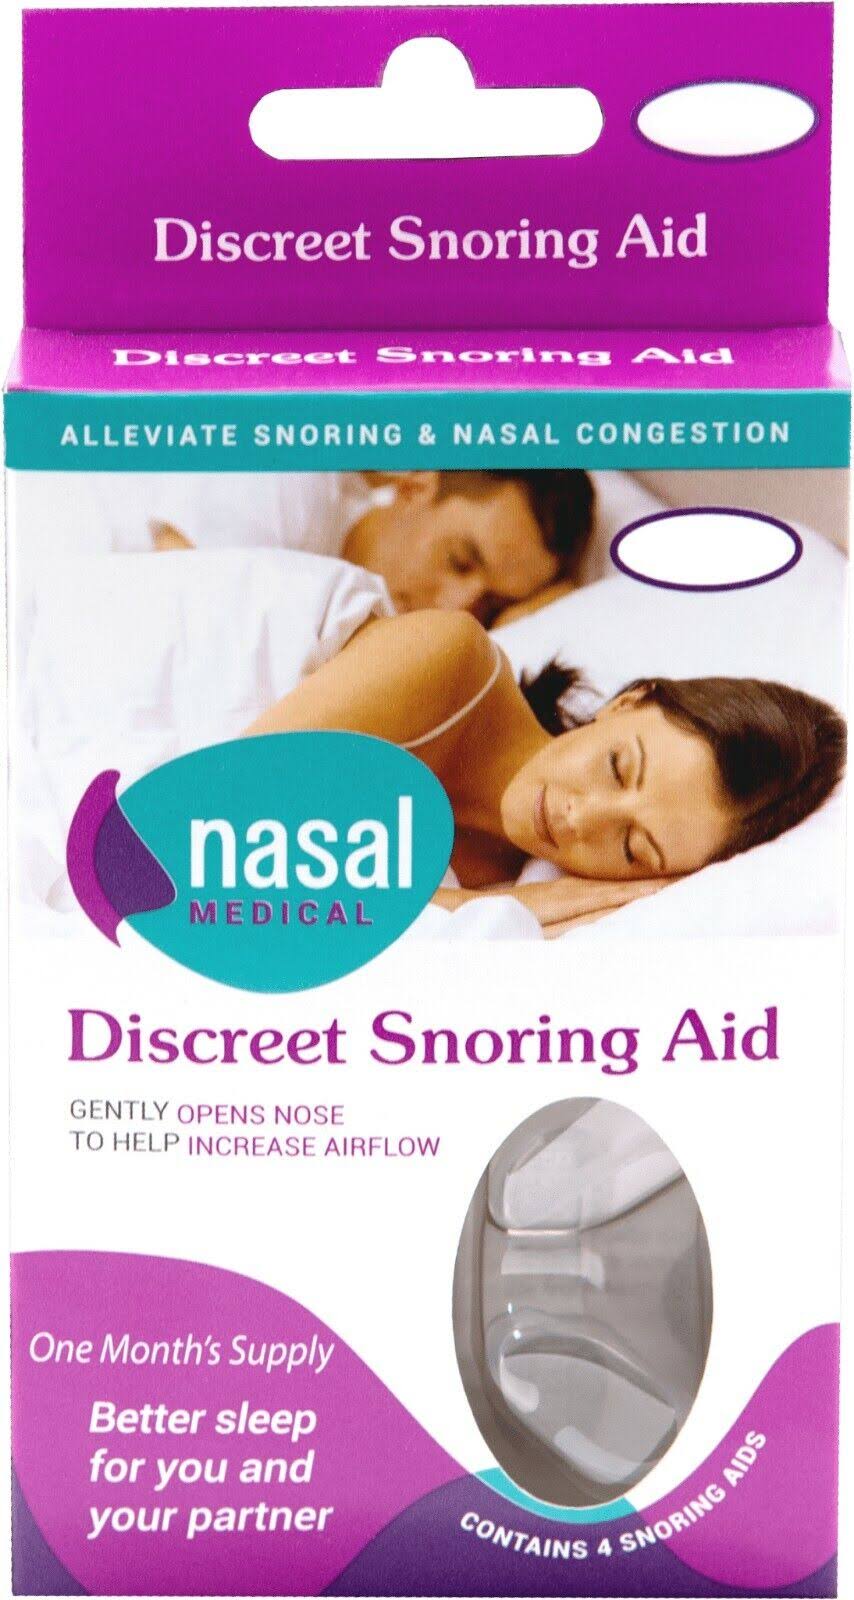 Nasal Medical Discreet Snoring Aid Size: Small